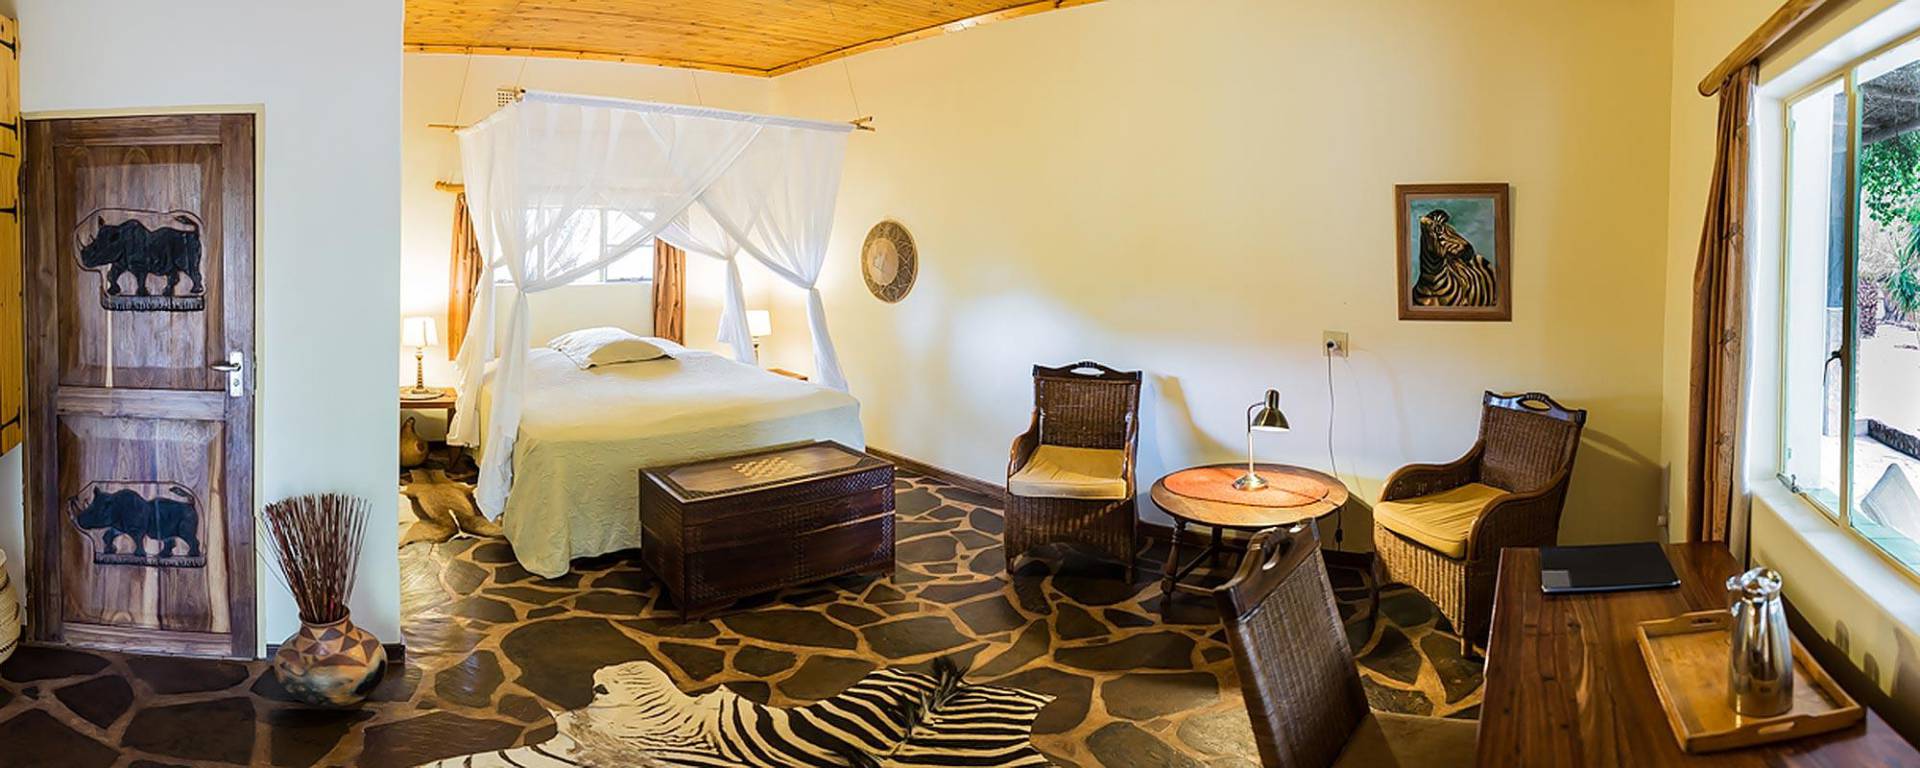 Gästezimmer in einer Lodge in Namibia